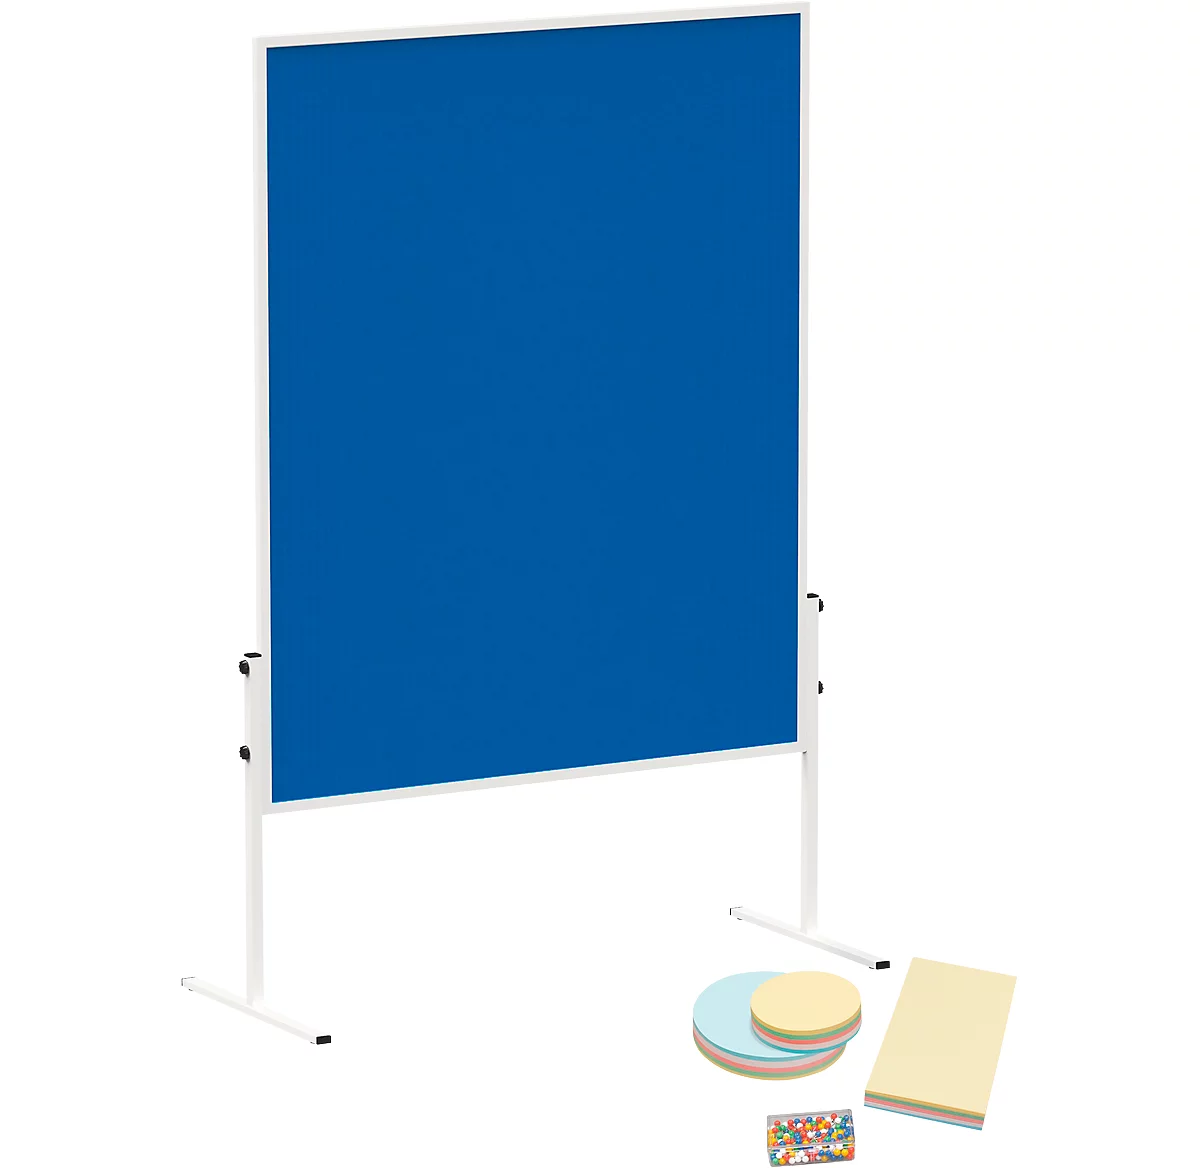 MAULsolid Moderationstafel, Filz, blau, B 1200 x H 1500 mm + Moderationskarten-Set, 360 Karten und 200 Pin-Nadeln